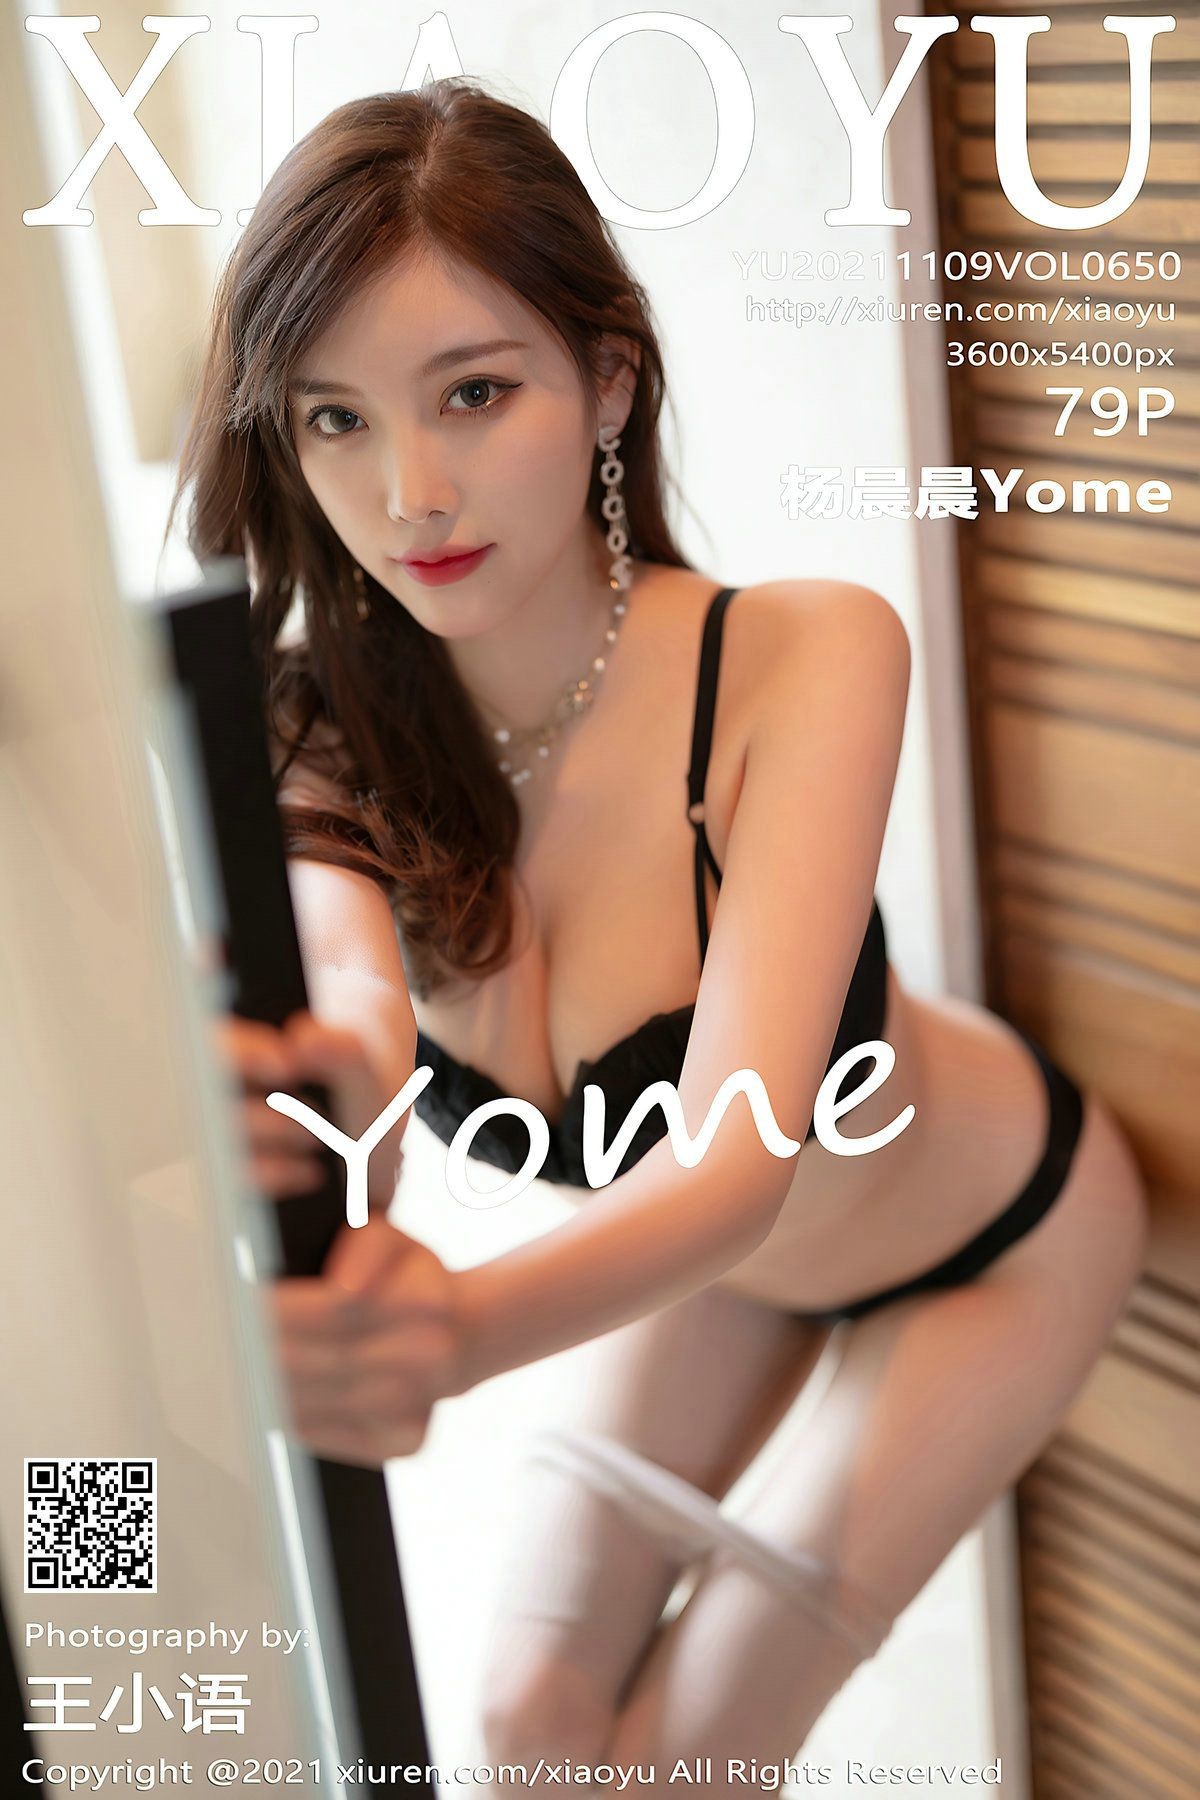 XIAOYU语画界性感模特写真第Vol.650期杨晨晨Yome (81)